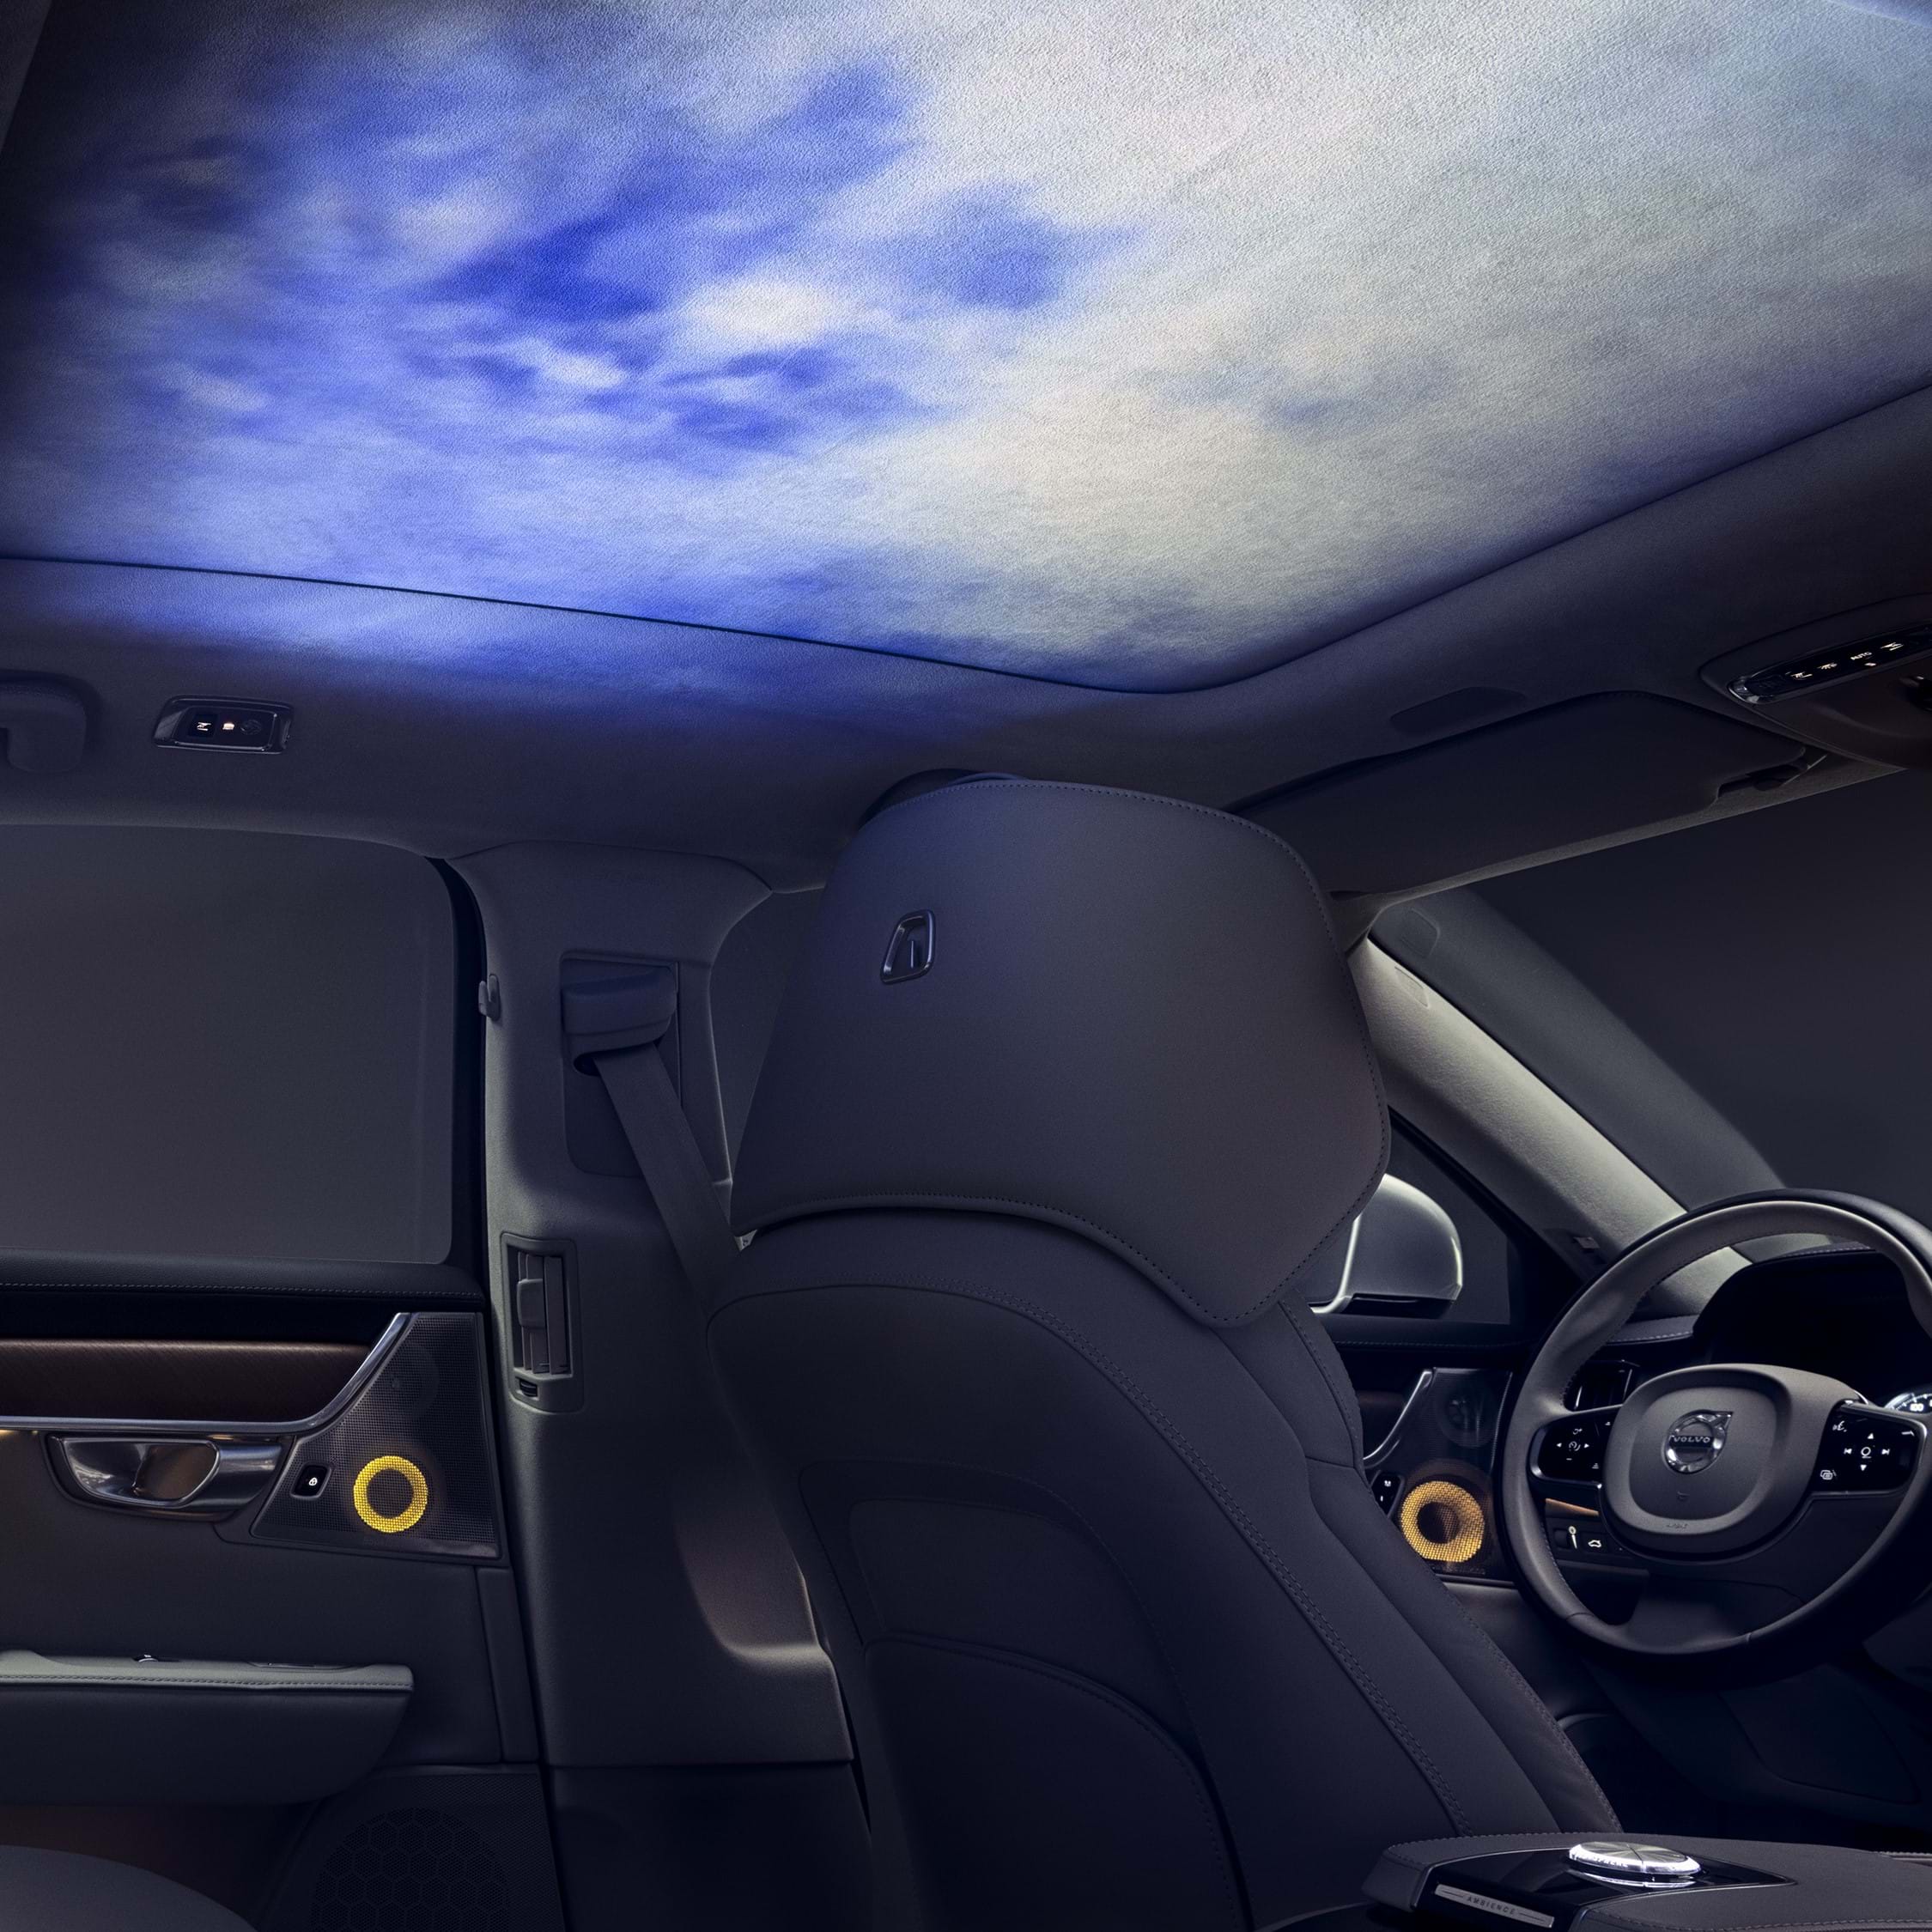 Pjesa e brendshme e një makine Volvo me dritën e ambientit të projektuar në tavanin e brendshëm